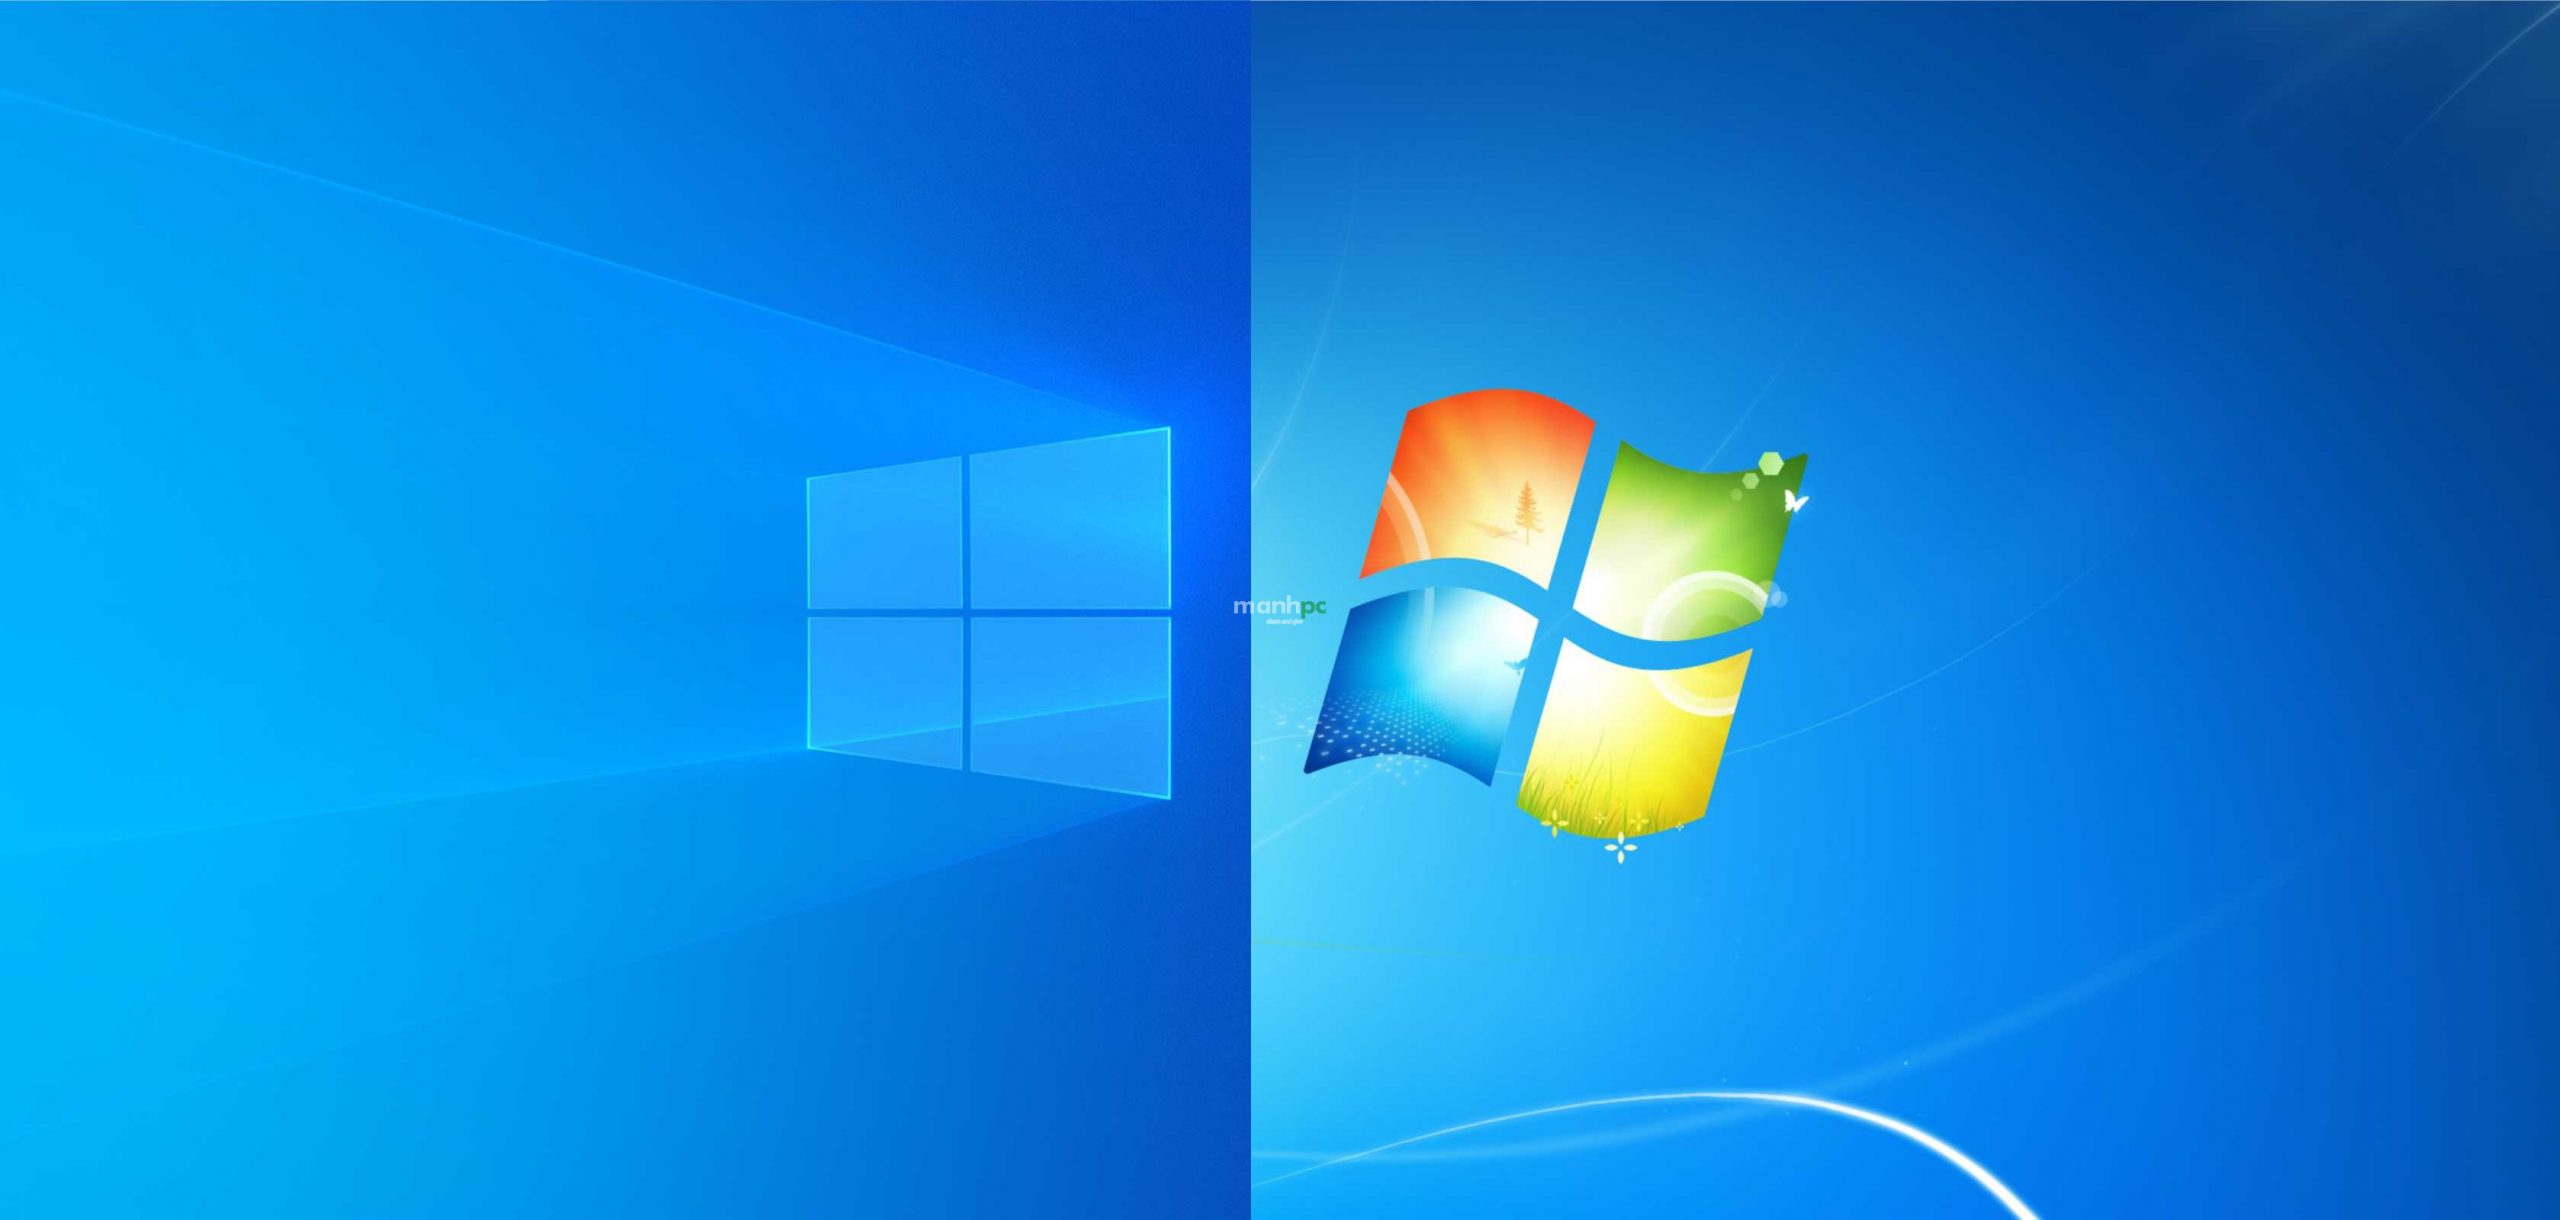 Cập nhật Windows và thực hiện Windows Installation sẽ giúp cho máy tính của bạn hoạt động tốt hơn, nhanh hơn và hiệu quả hơn trong công việc. Trải nghiệm cùng chúng tôi để tìm hiểu những cách đơn giản để nâng cấp và cài đặt Windows một cách thuận tiện và dễ dàng.